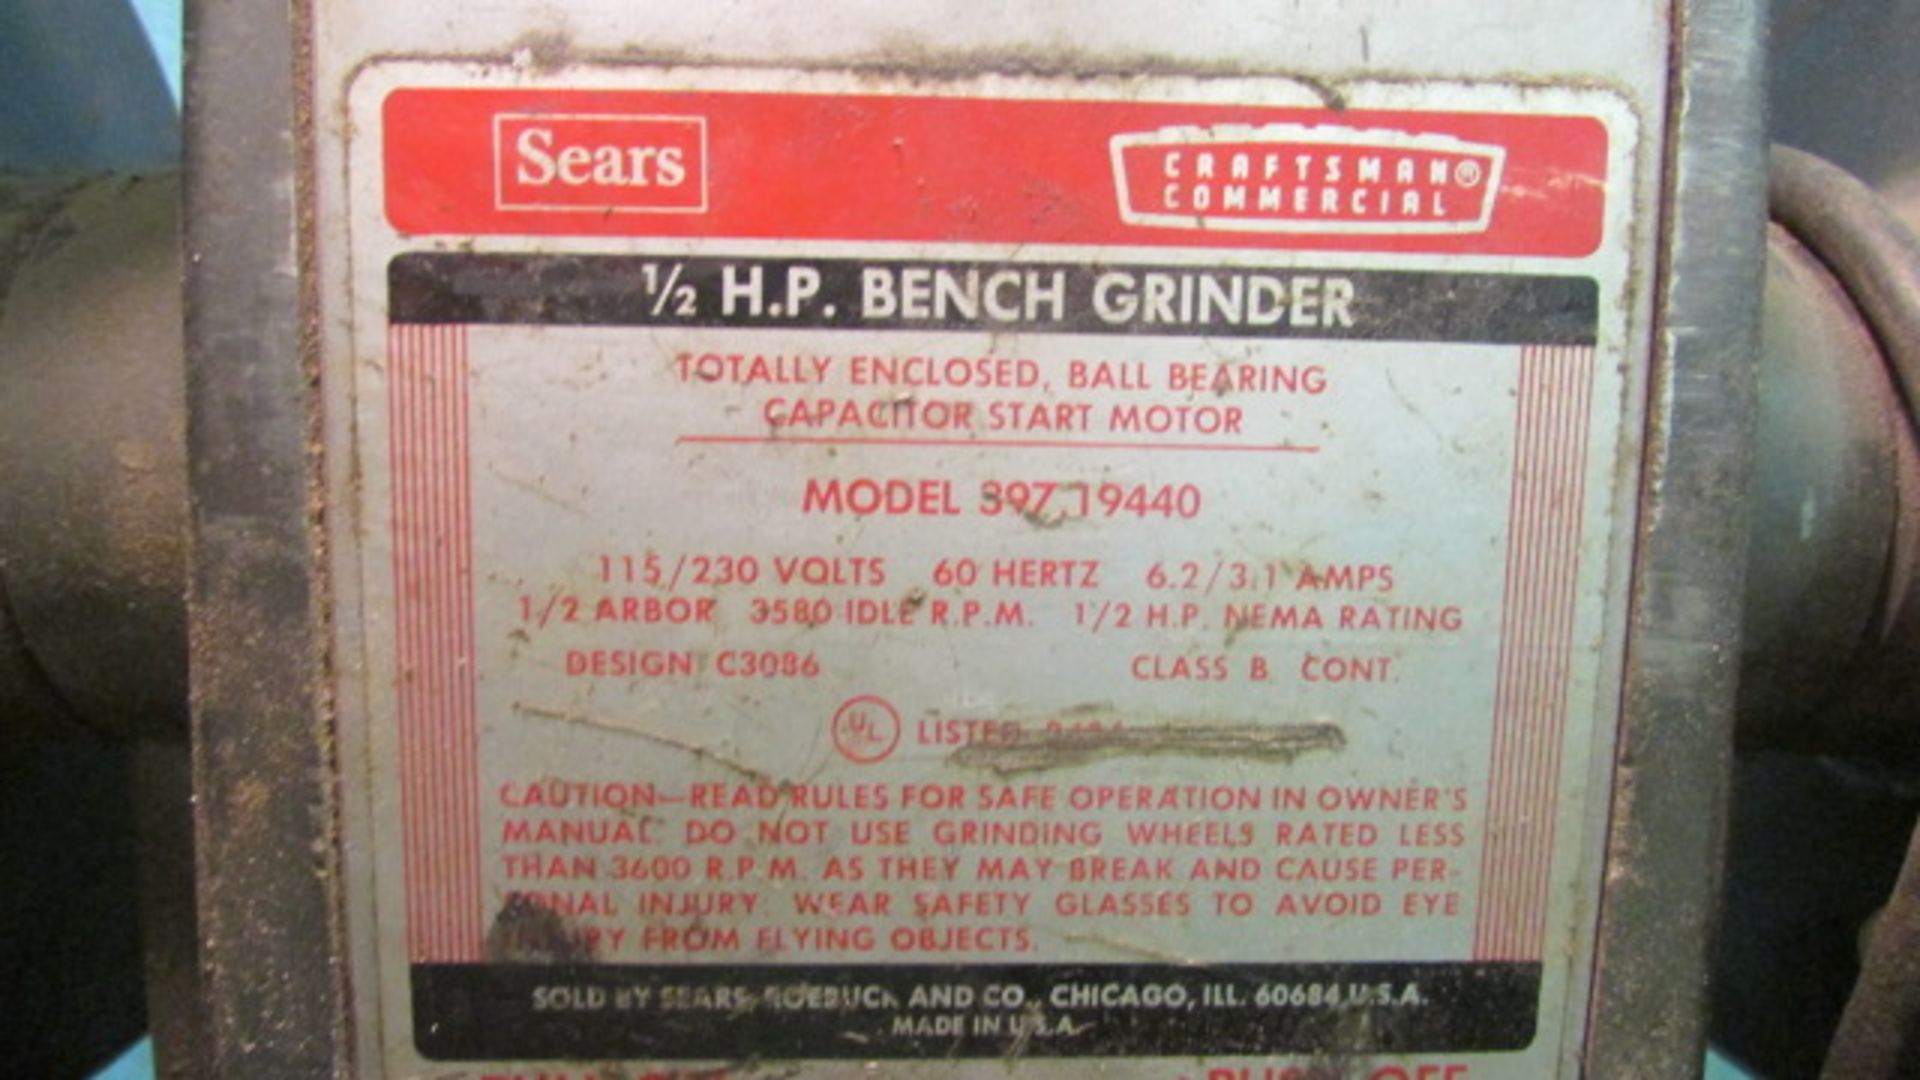 Sears Bench Grinder, m/n 397.19440 - Image 2 of 2